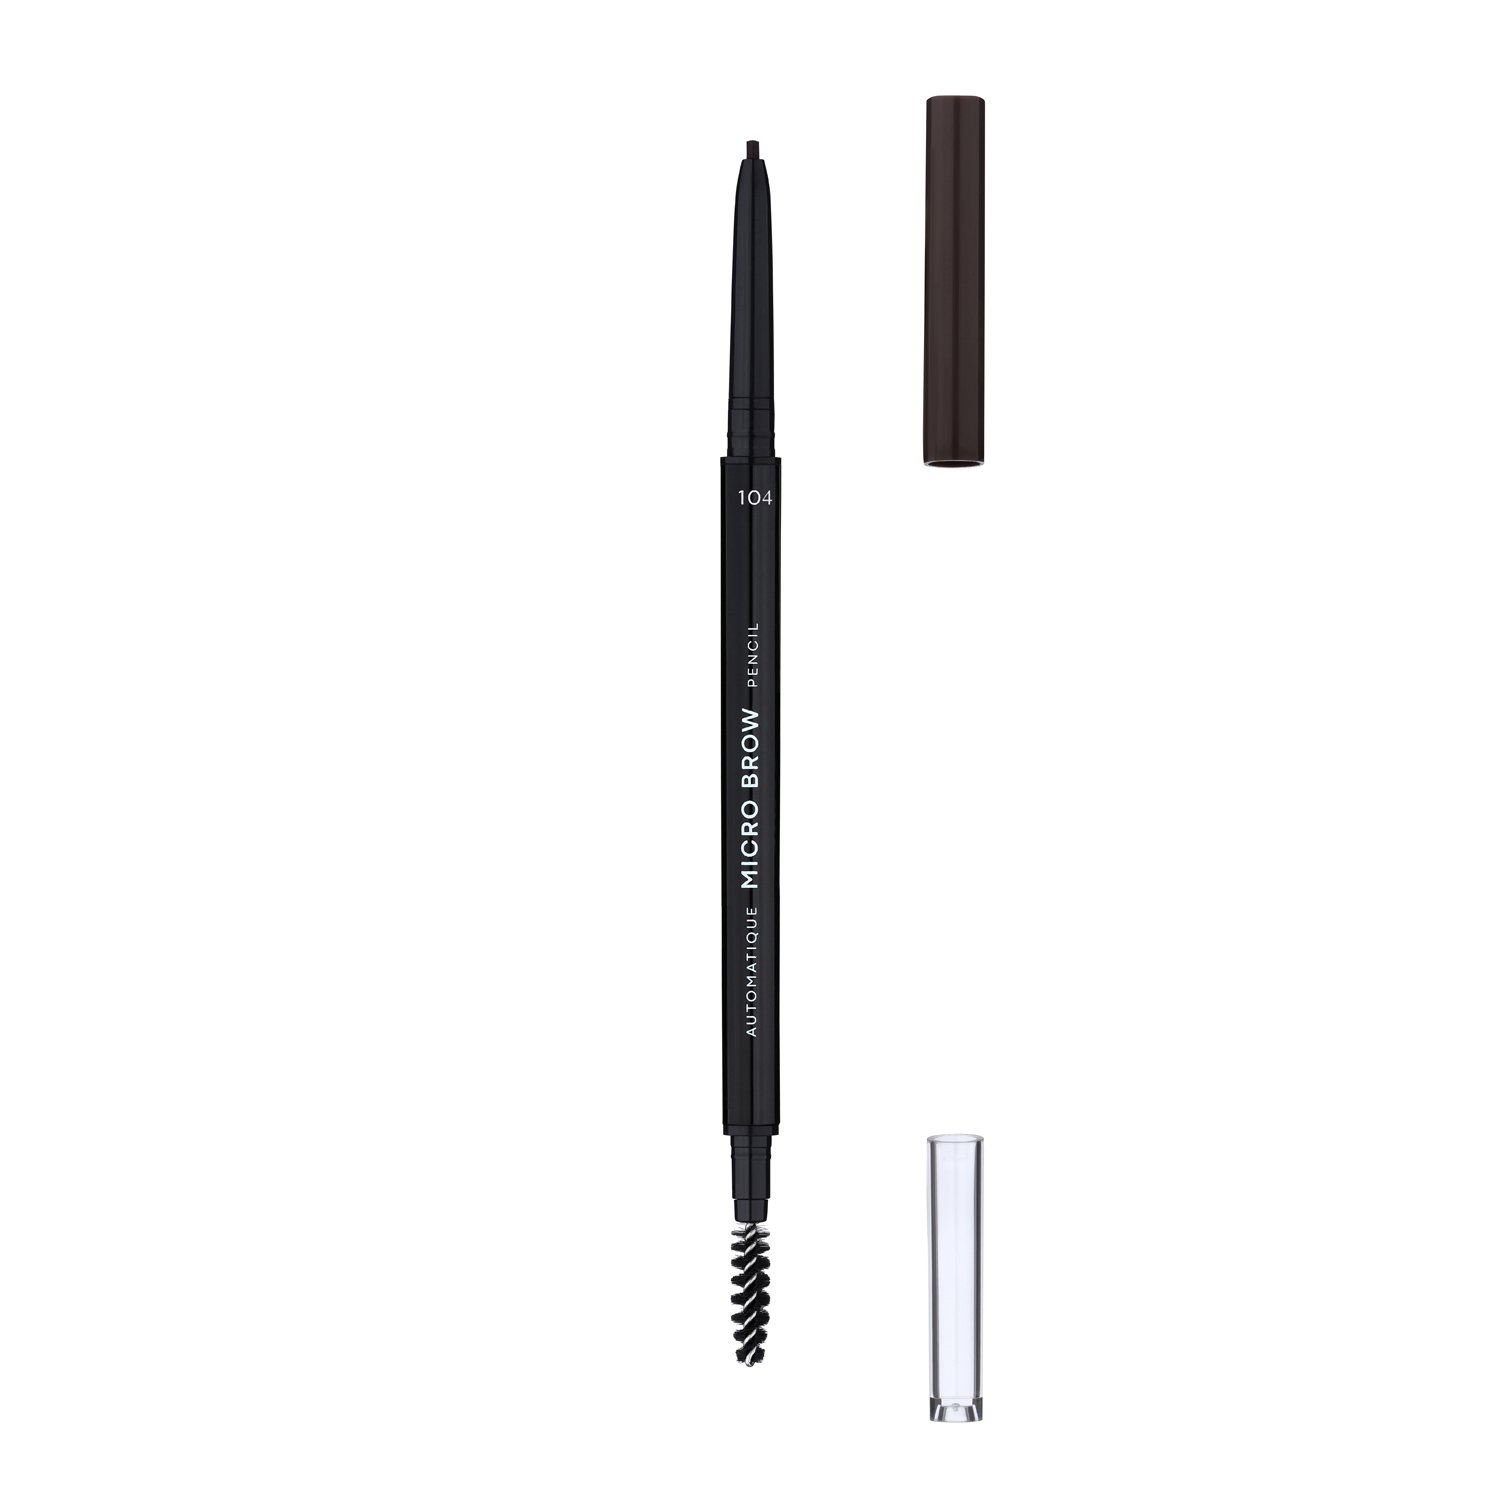 Карандаш для бровей LN Professional Micro Brow Pencil тон 104, 0.12 г - фото 3